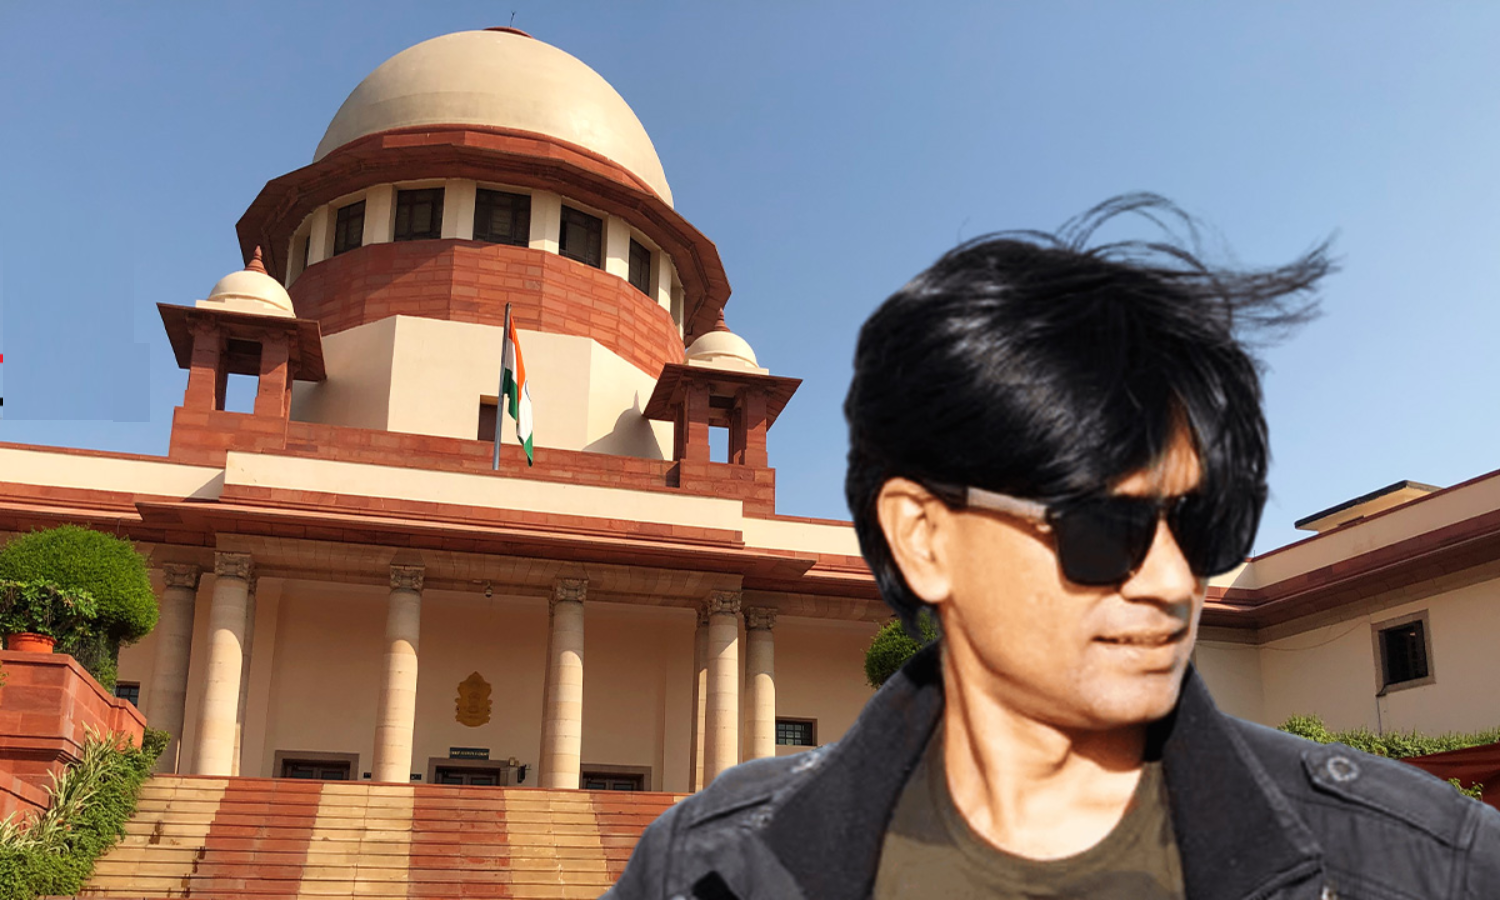 سپریم کورٹ کا زبیر کی رہائی کا حکم، مقدمہ دہلی منتقل